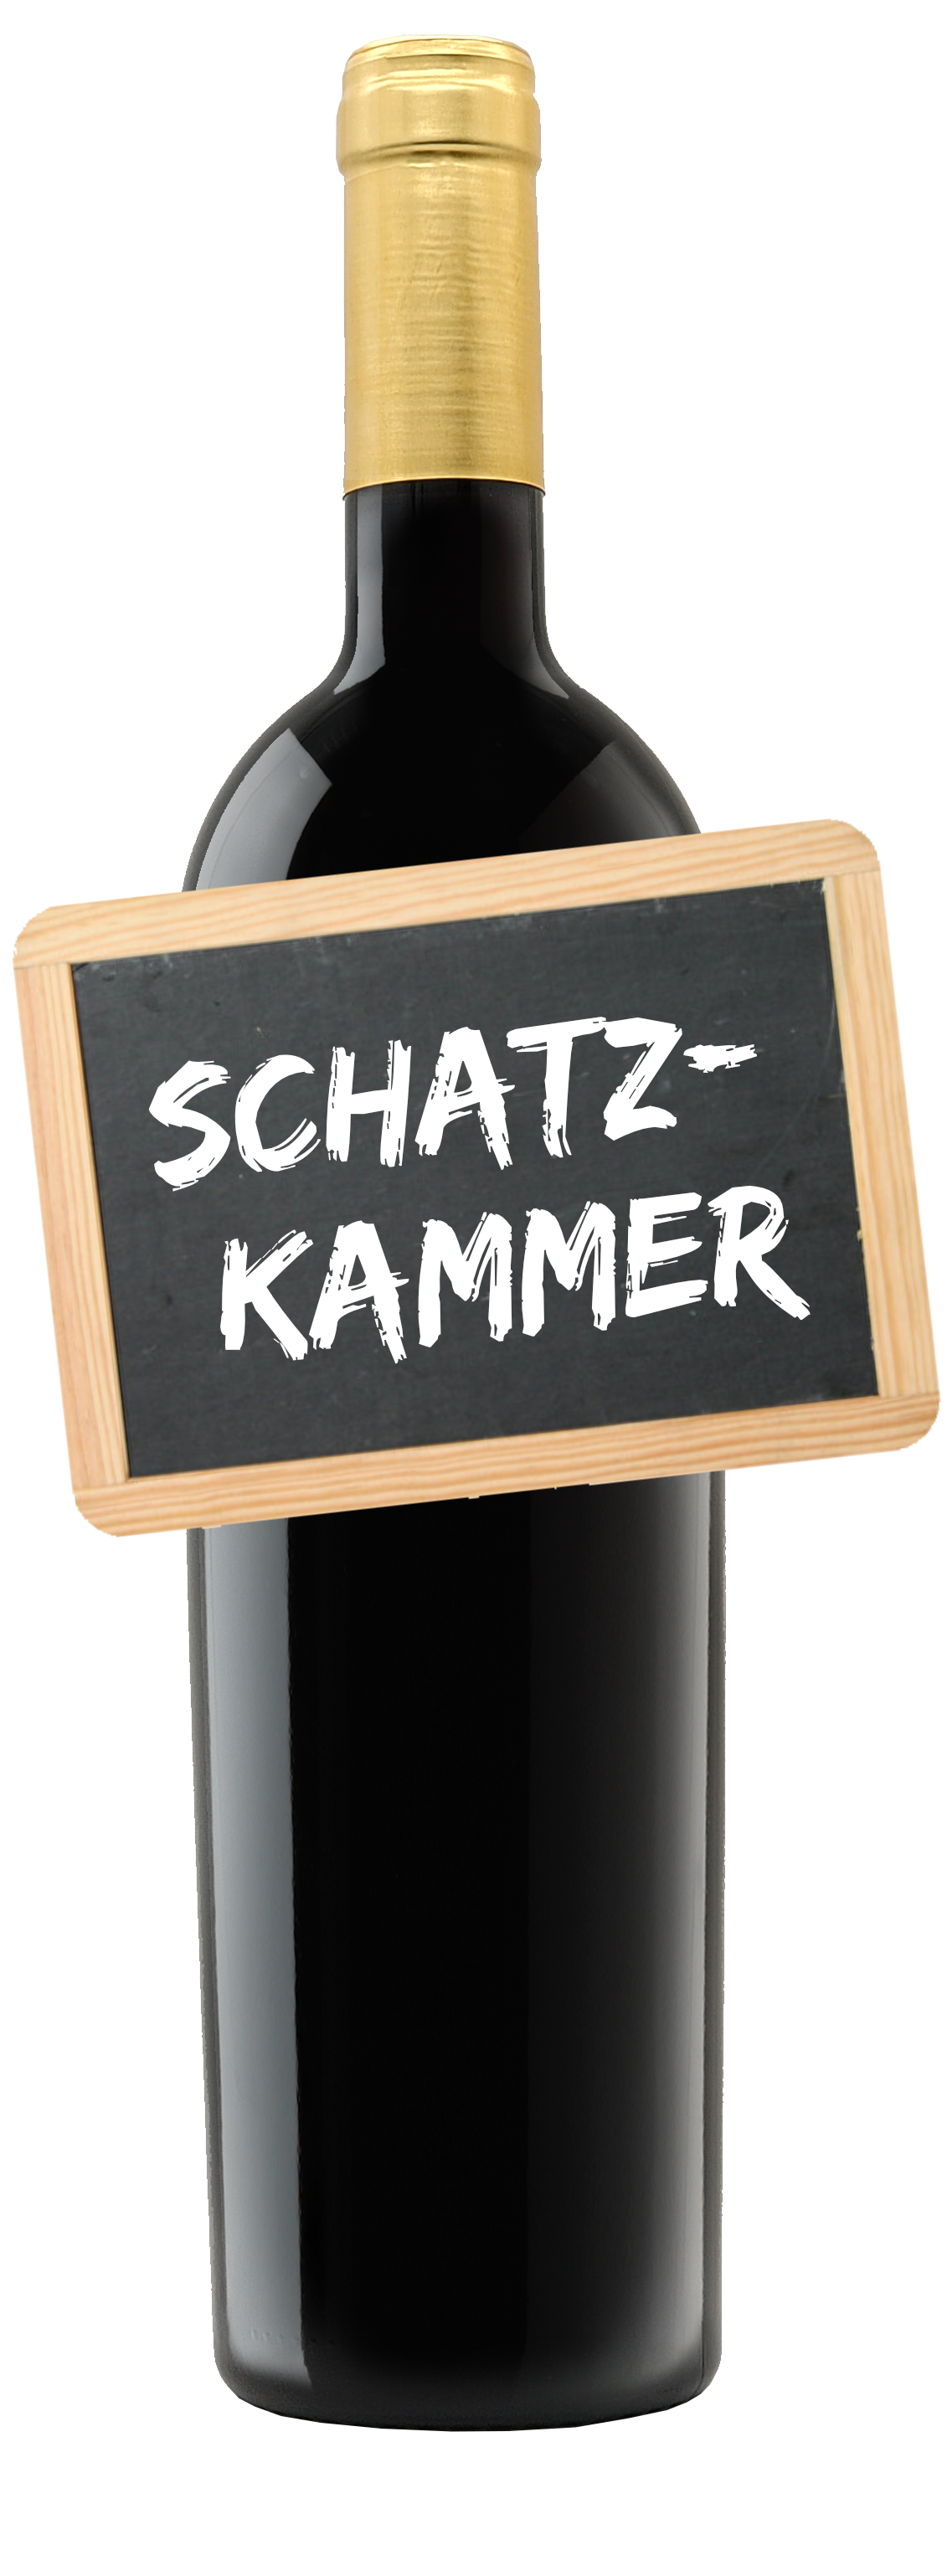 IM KIRSCHGARTEN<br>           2020 Weißburgunder trocken<br>           Qualitätswein Hambach<br>           MUNDUS VINI Gold 2021<br>           Goldene Kammerpreismünze 2021<br>           2. Platz Siegerwein 2021